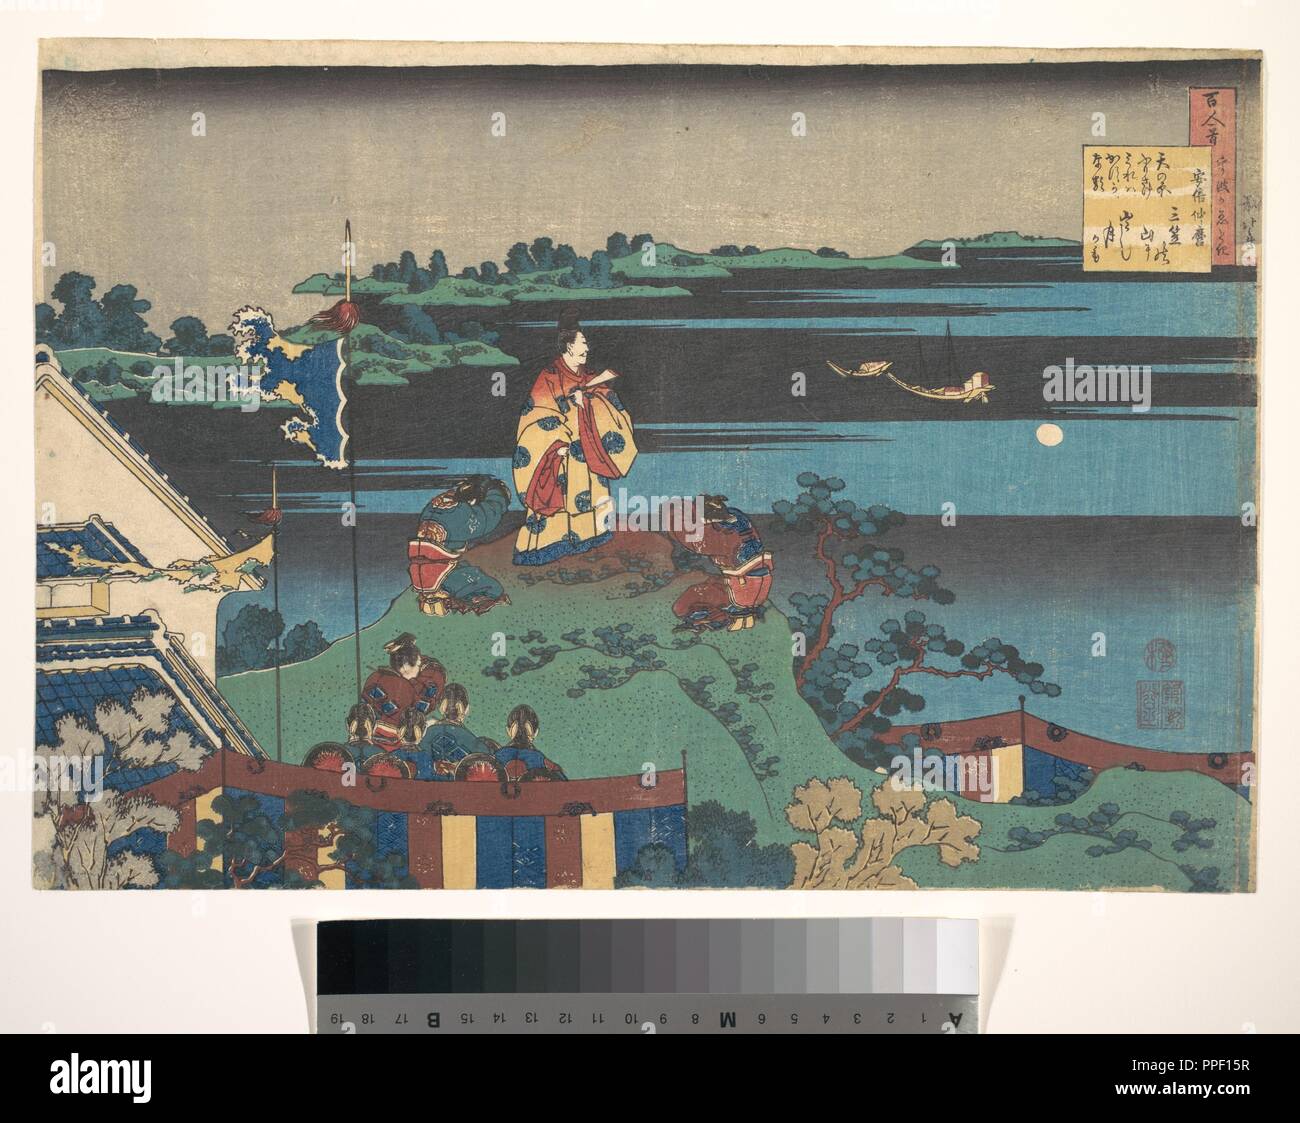 Poema de Abe no Nakamaro, de la serie cien poemas explicó la Enfermera (hyakunin isshu uba ga etoki). Artista: Katsushika Hokusai (japonés, Tokio (Edo) Tokio Edo (1760-1849). Cultura: Japón. Dimensiones: 10 3/8 x 14 7/8 pulg. (26,4 x 37,8 cm). Fecha: 1760-1849. Abe no Nakamaro (698-770) compuso este poema en China, en su anhelo de la casa: Amanohara furisake mireba Kasuga naru yama ni ideshi Mikasa no tsuki ka mo podría ser la luna que resplandecía sobre el Monte Mikasa en Nara que veo en esta tierra lejana cuando ahora miro a través de los vastos campos de las estrellas. Museo: Metro Foto de stock